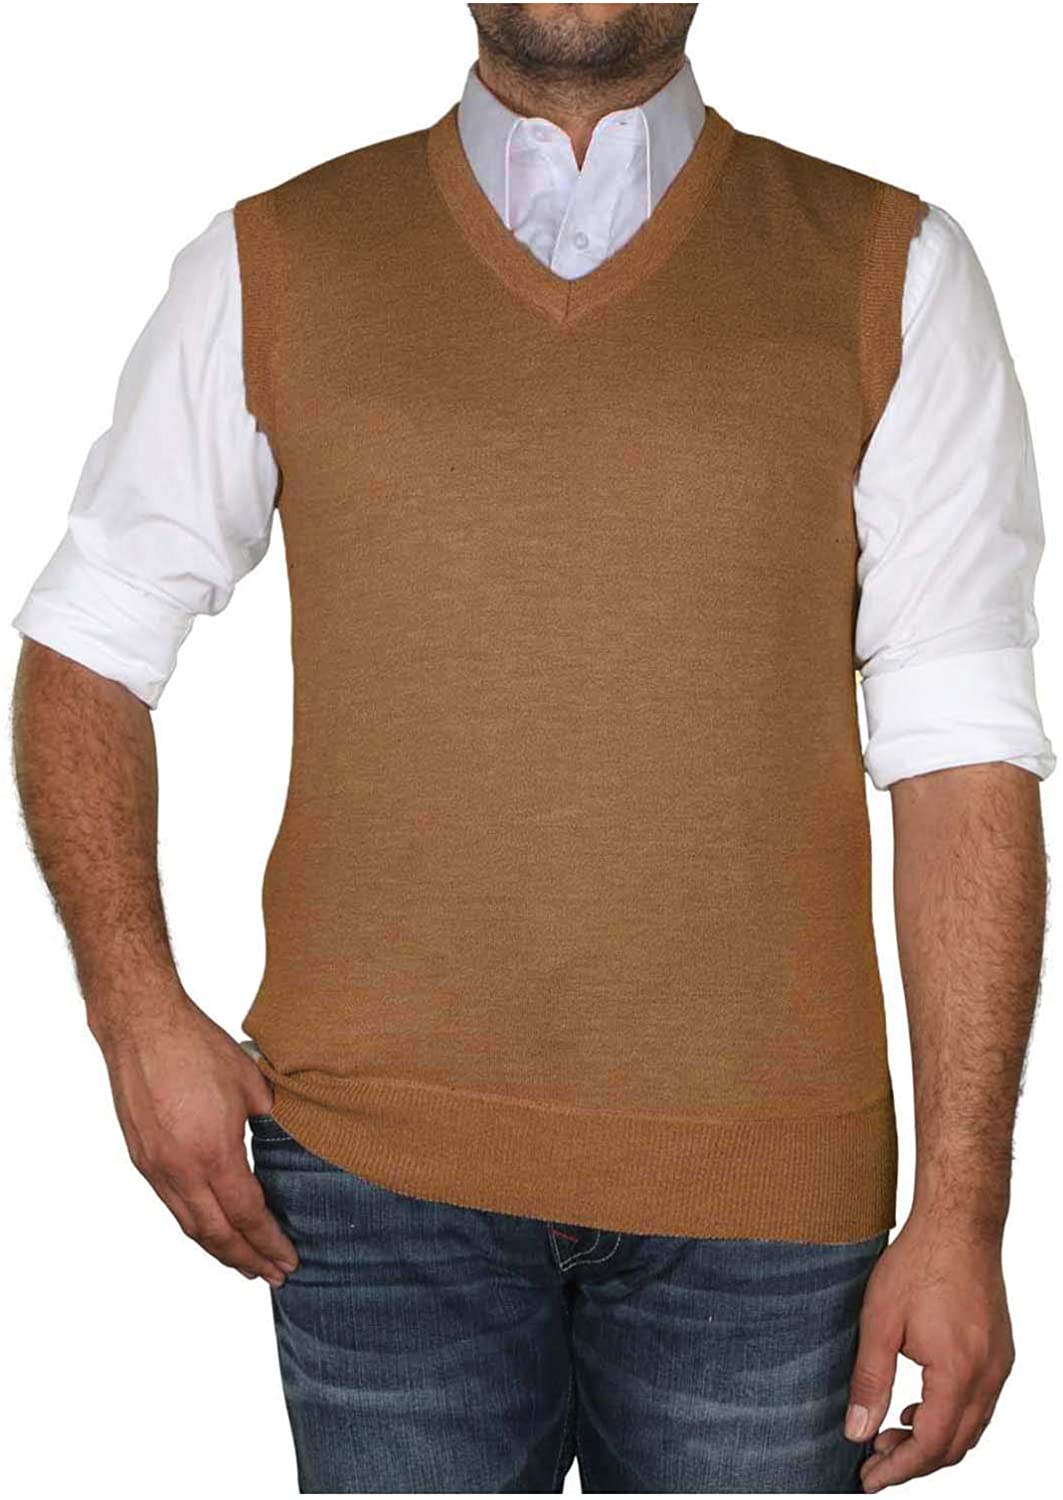 True Rock Men's Argyle V-Neck Sweater Vest